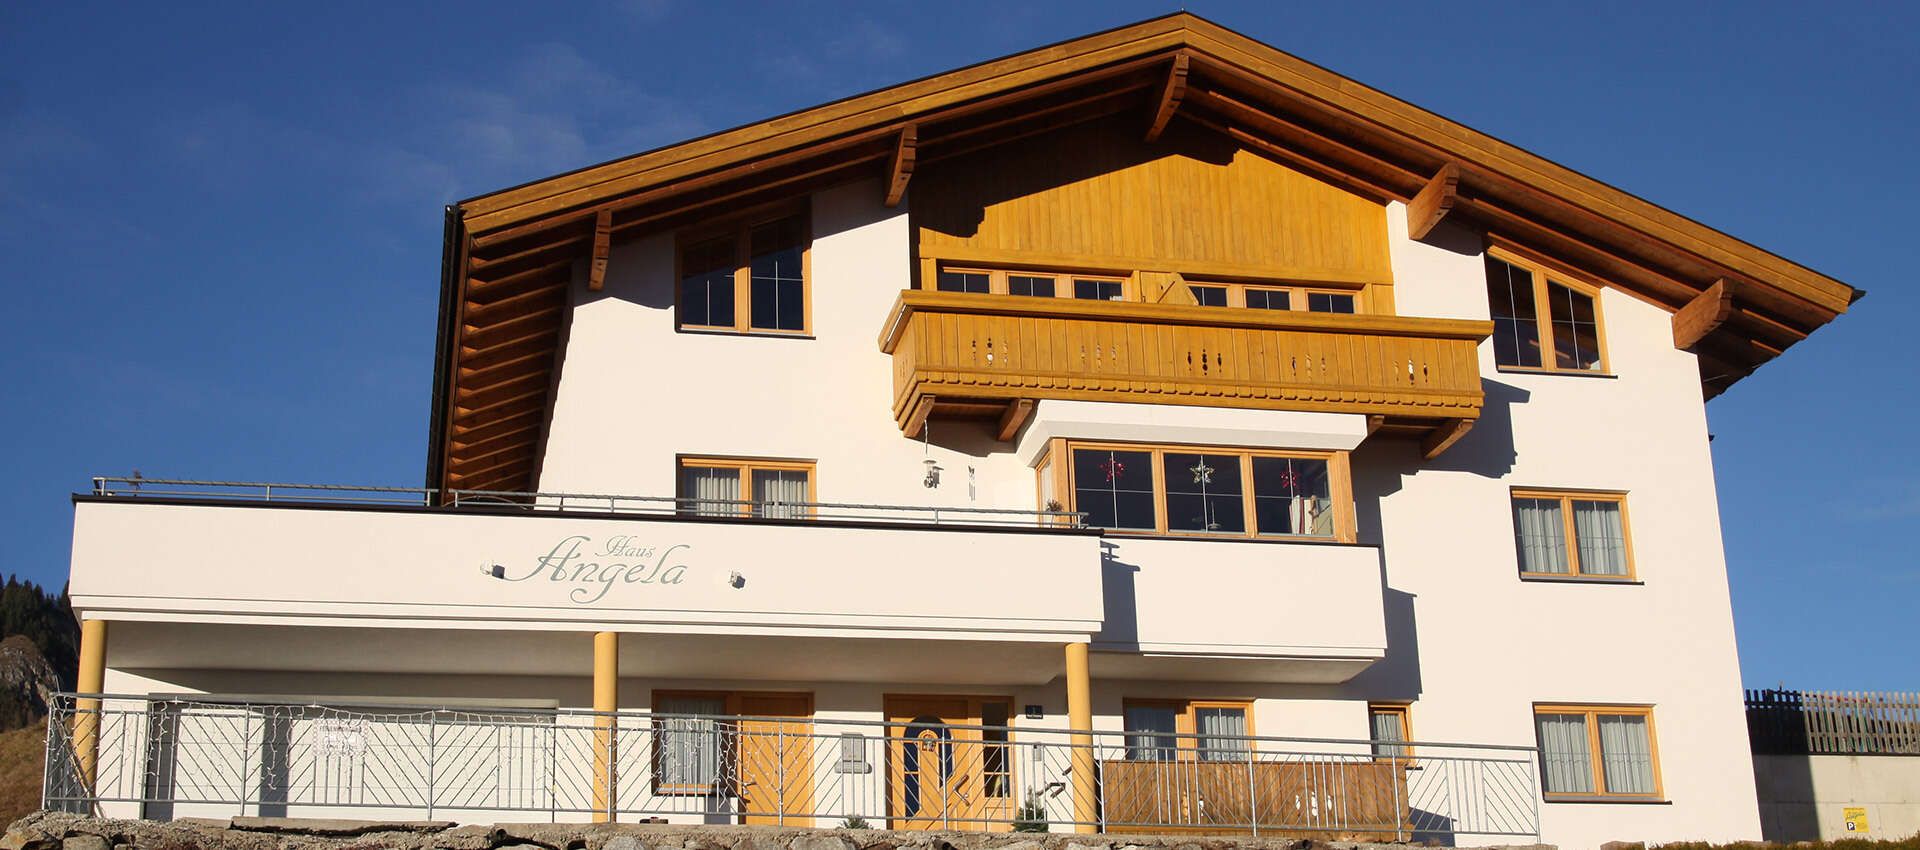 Haus Angela mit Ferienwohnungen in Fiss in Tirol